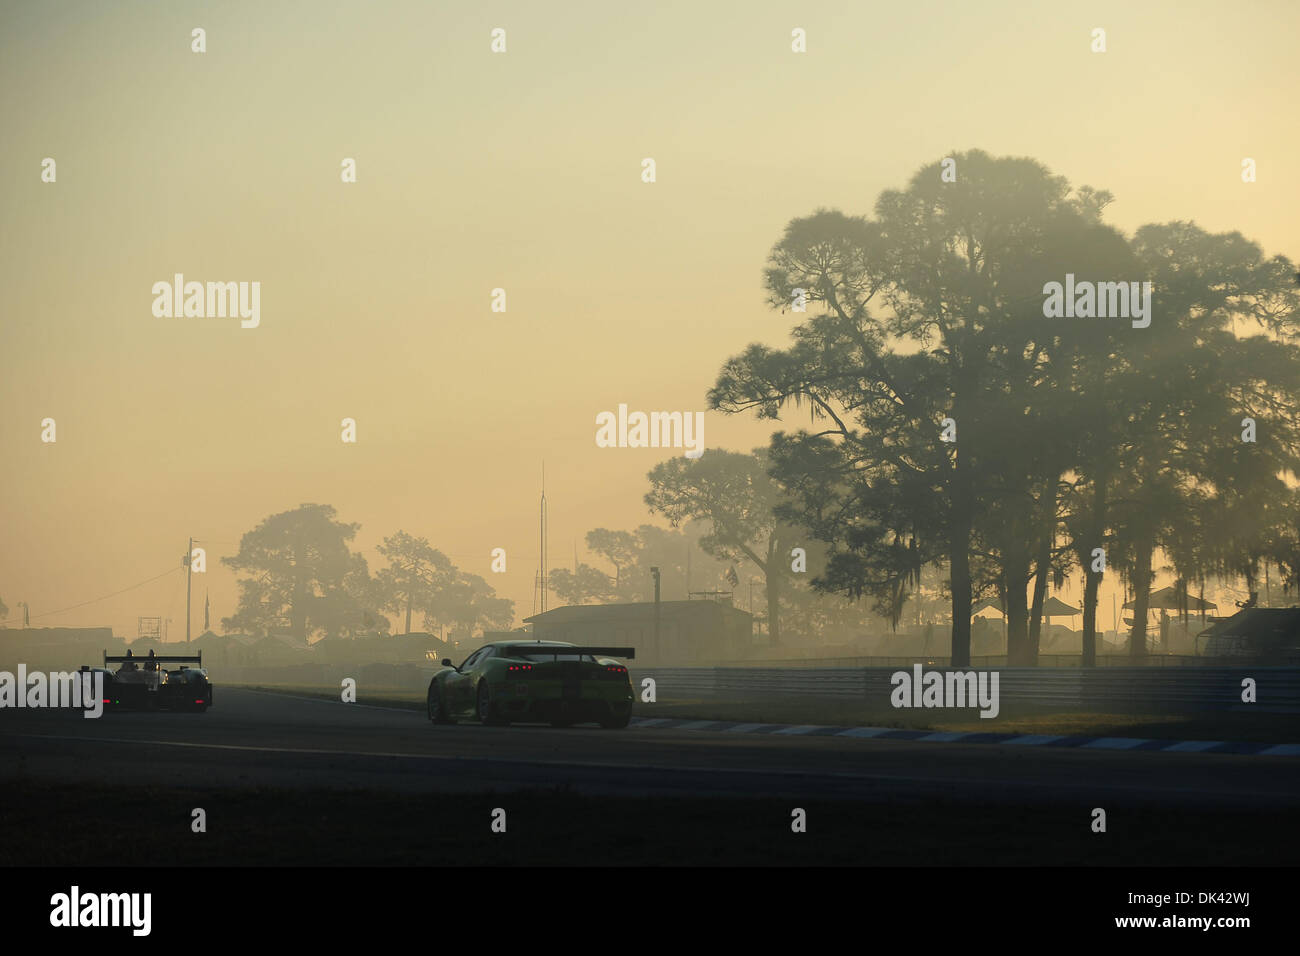 Mar 19, 2011 - Sebring, Floride, États-Unis - Warm-up action comme le soleil se lève à l les 12 heures de Sebring. (Crédit Image : © Rainier Ehrhardt/ZUMApress.com) Banque D'Images